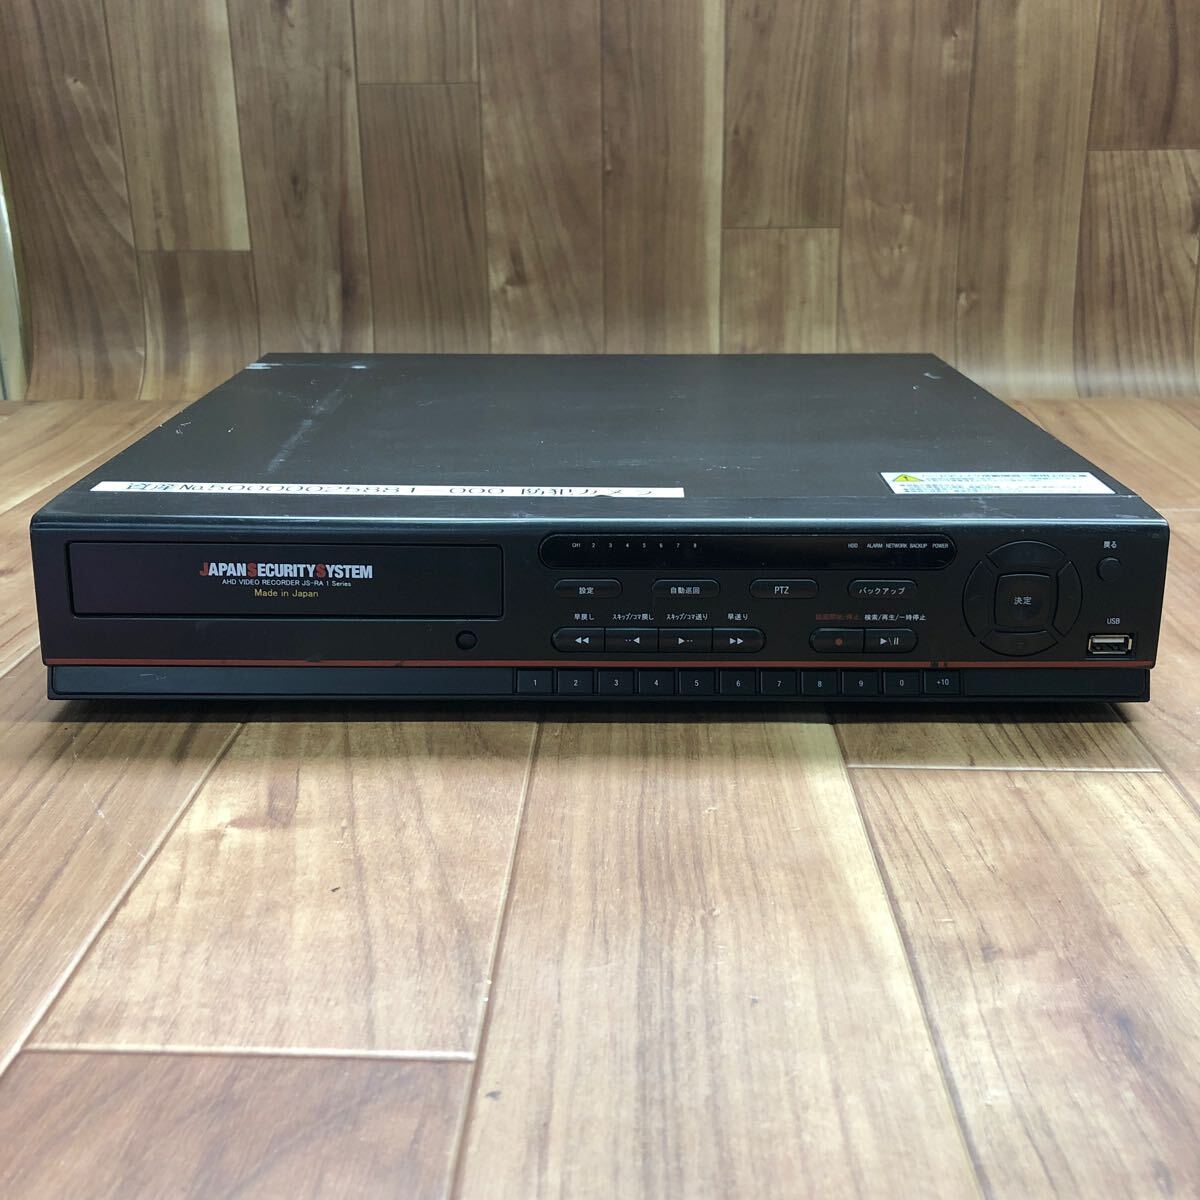 CKT-240404-15 digital video recorder JS-RA1008 Japan crime prevention system digital recorder junk 